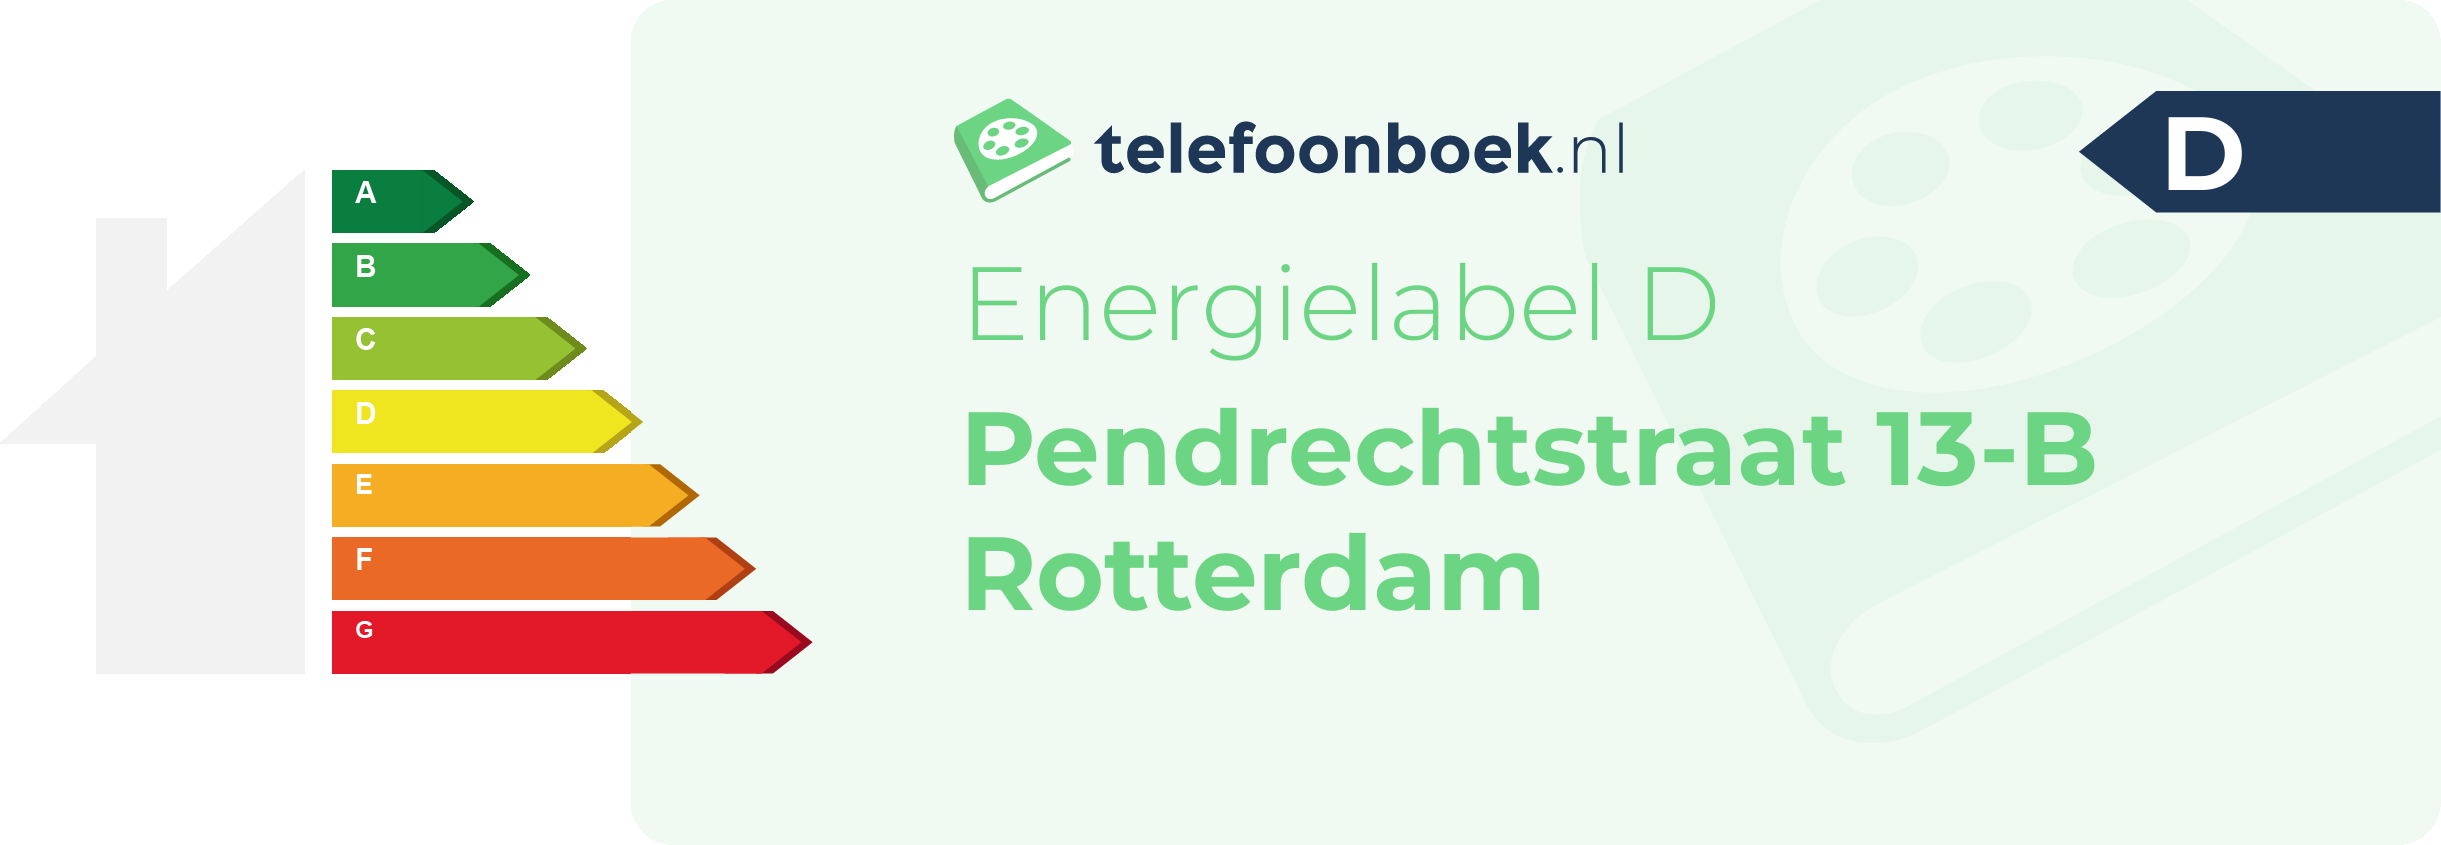 Energielabel Pendrechtstraat 13-B Rotterdam